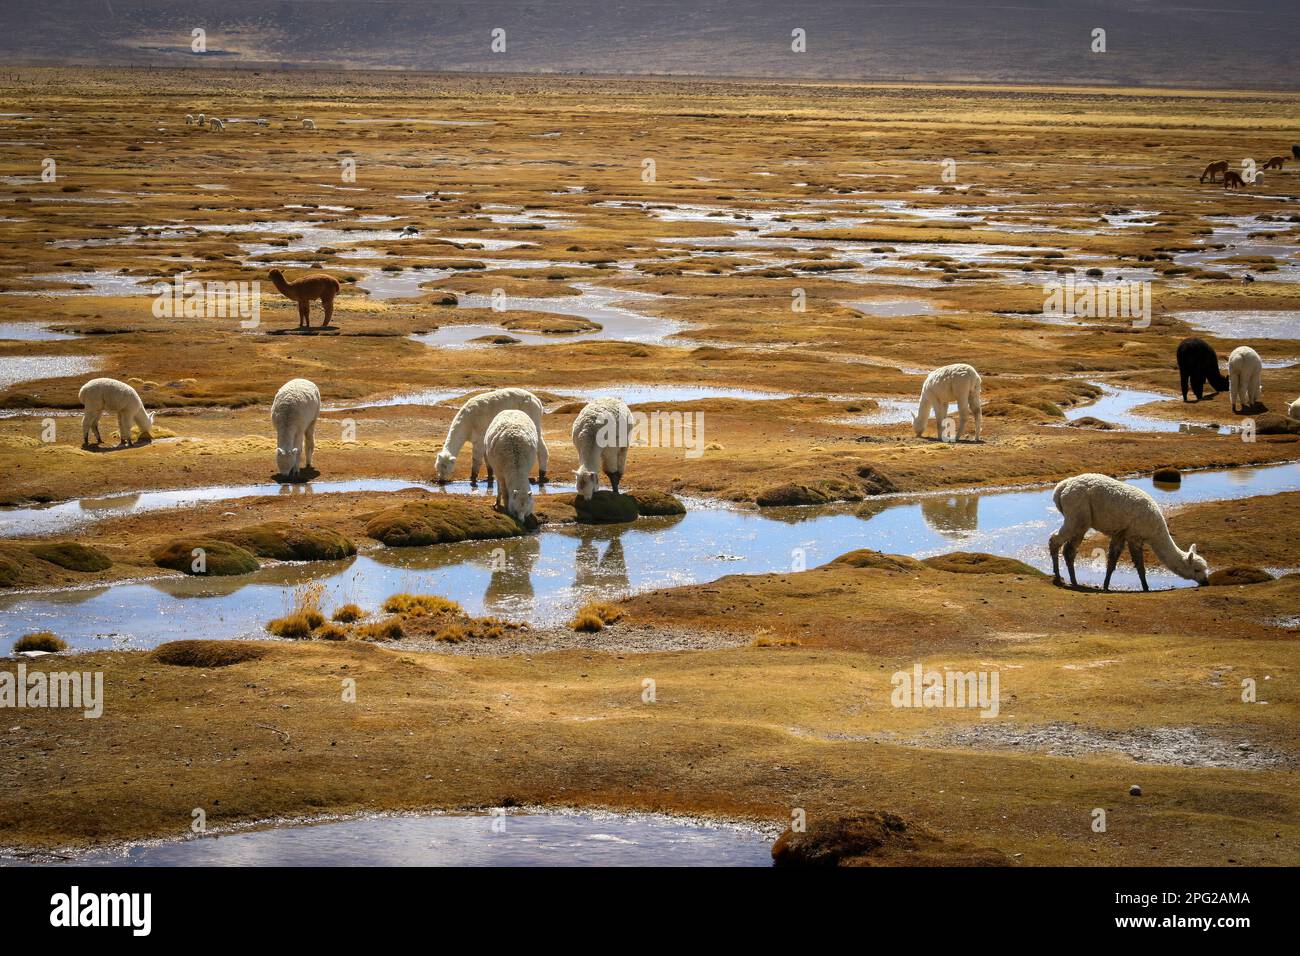 llamas watering on a Peruvian plateau Stock Photo